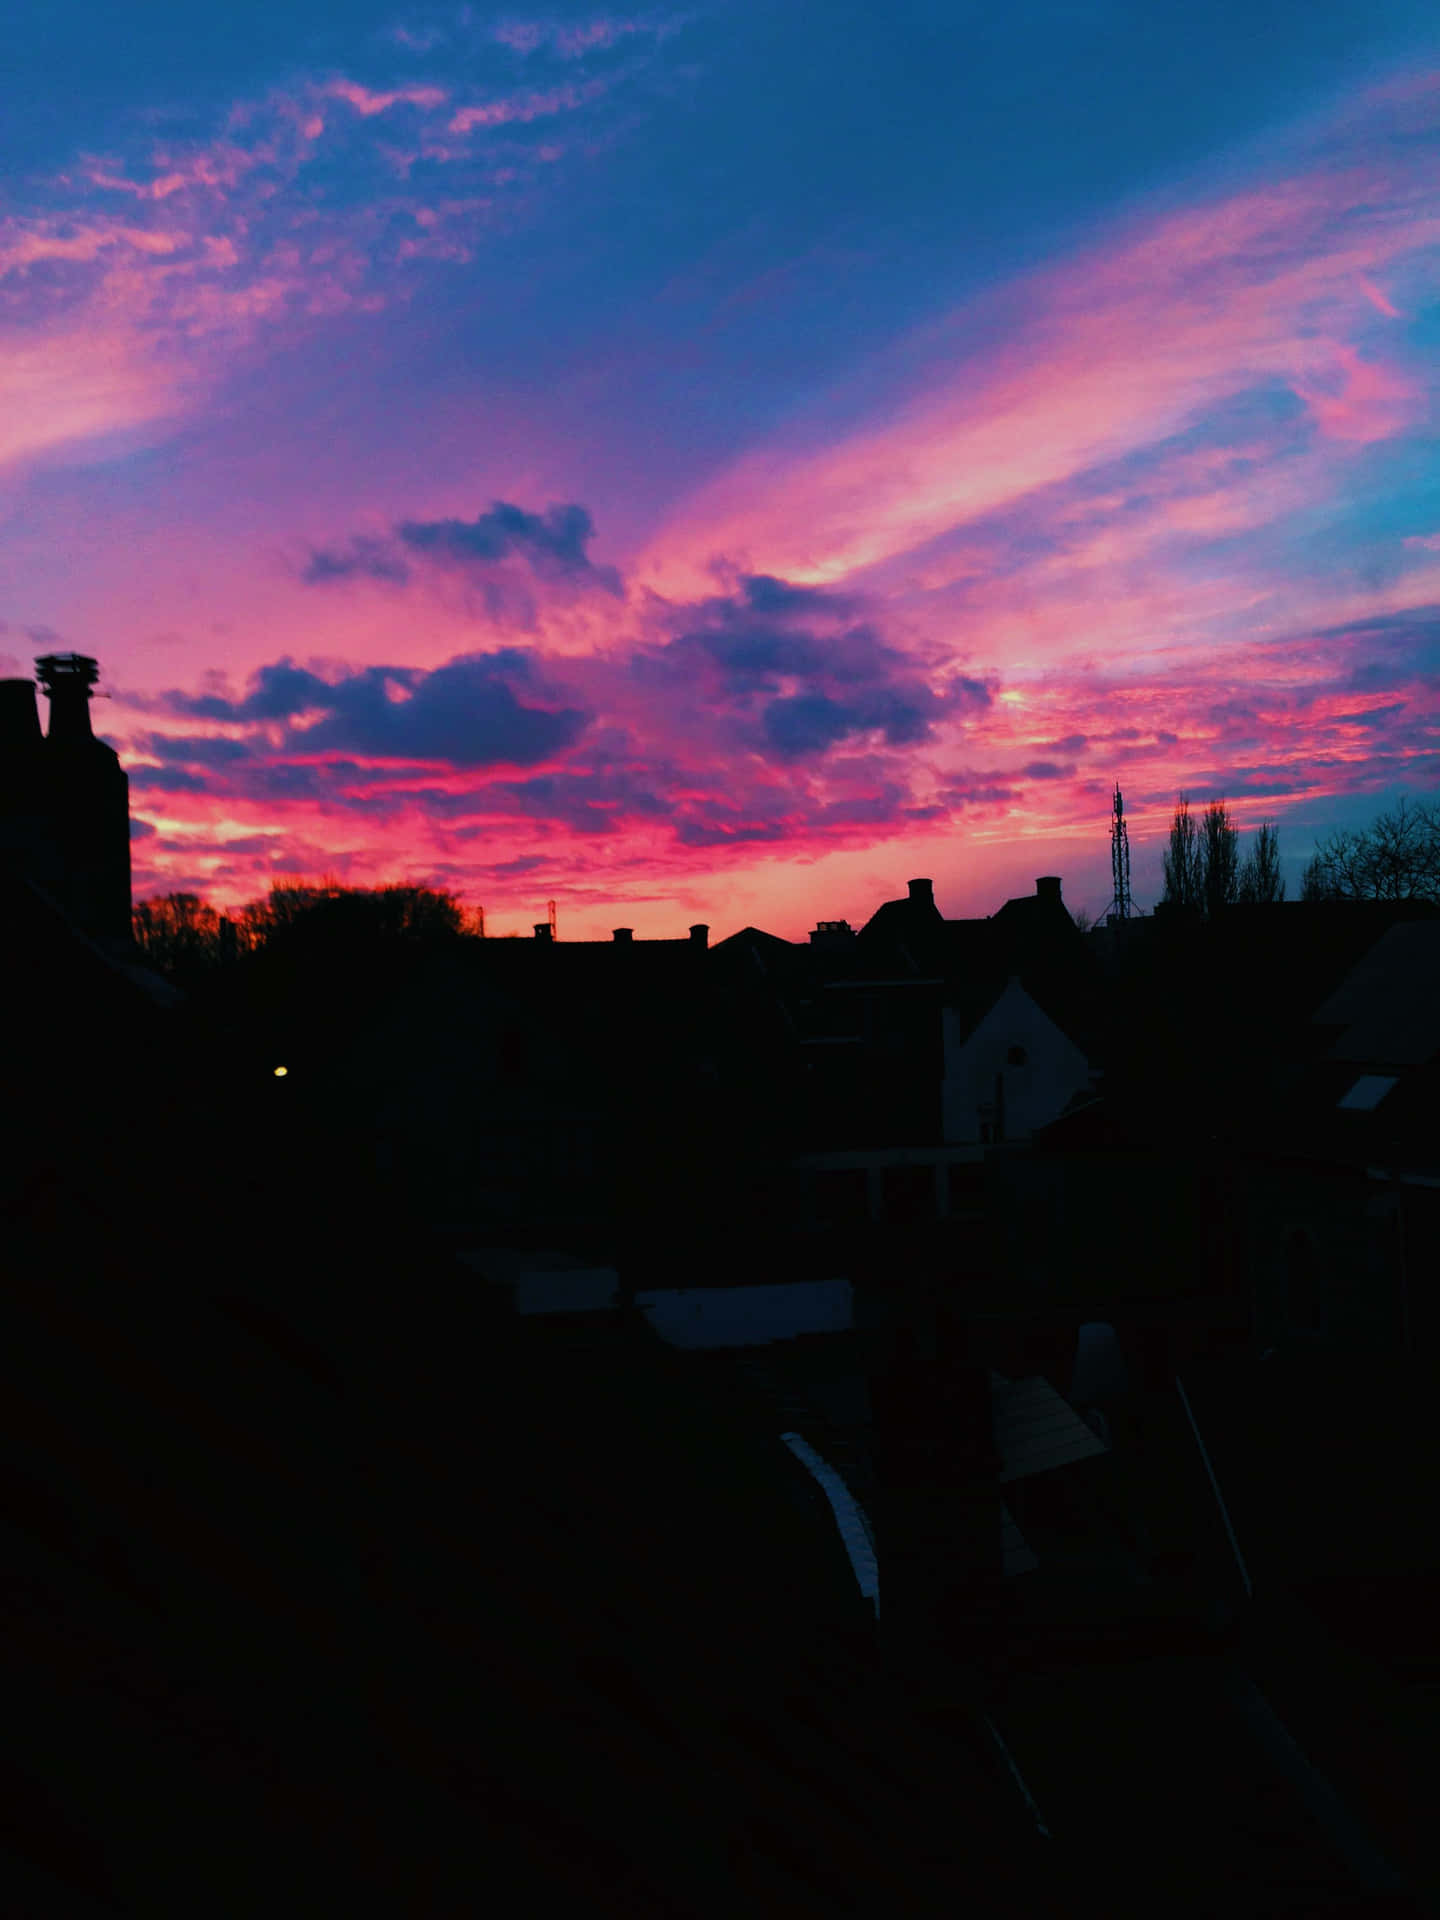 Genießensie Die Schönheit Eines Atemberaubenden Sonnenuntergangs Auf Ihrem Iphone. Wallpaper